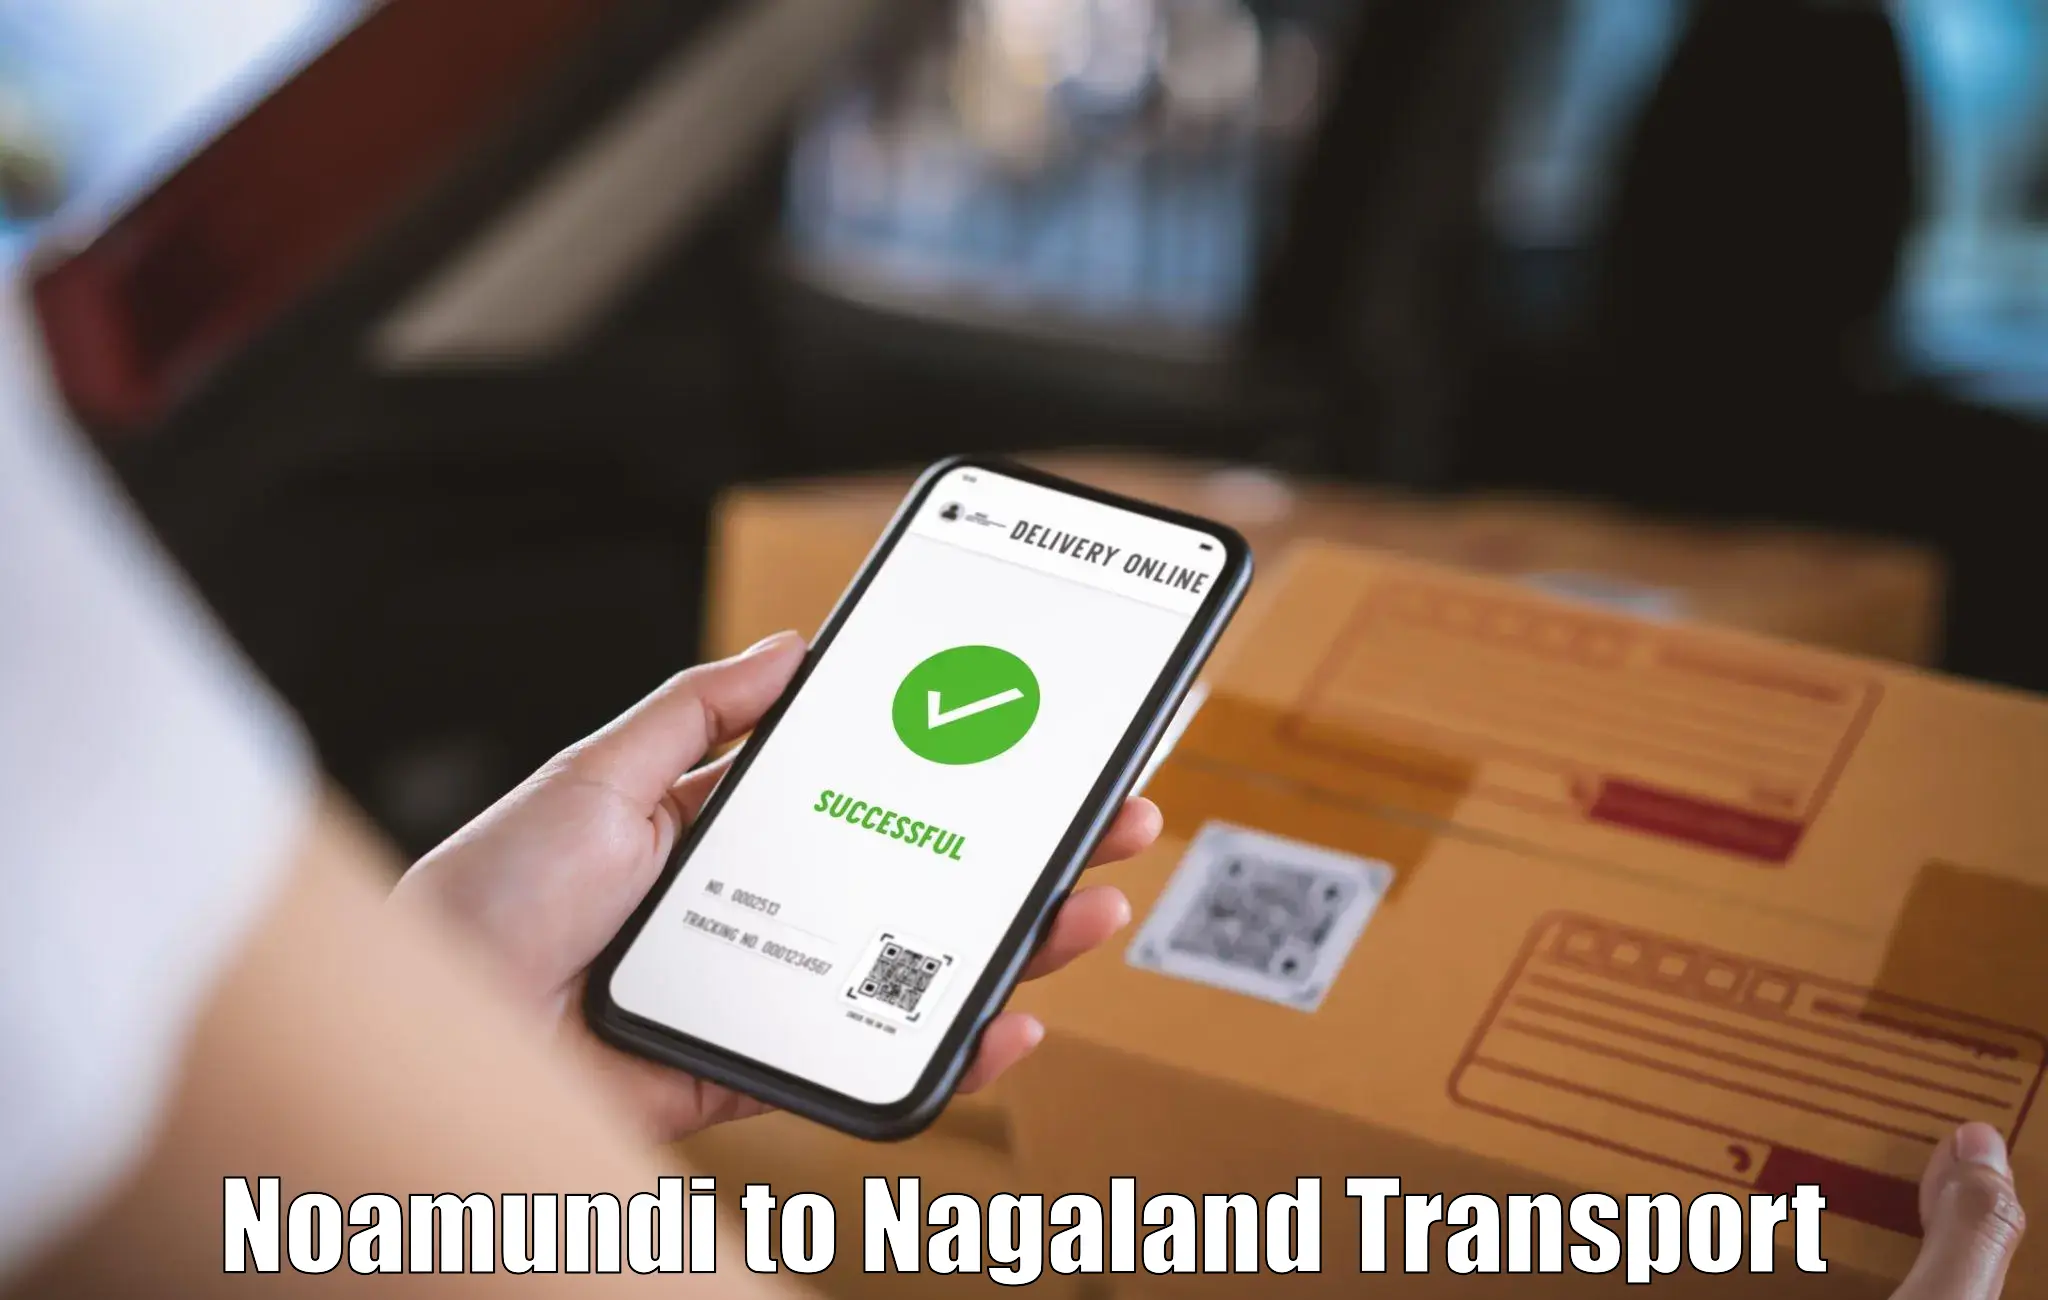 Goods delivery service Noamundi to Nagaland